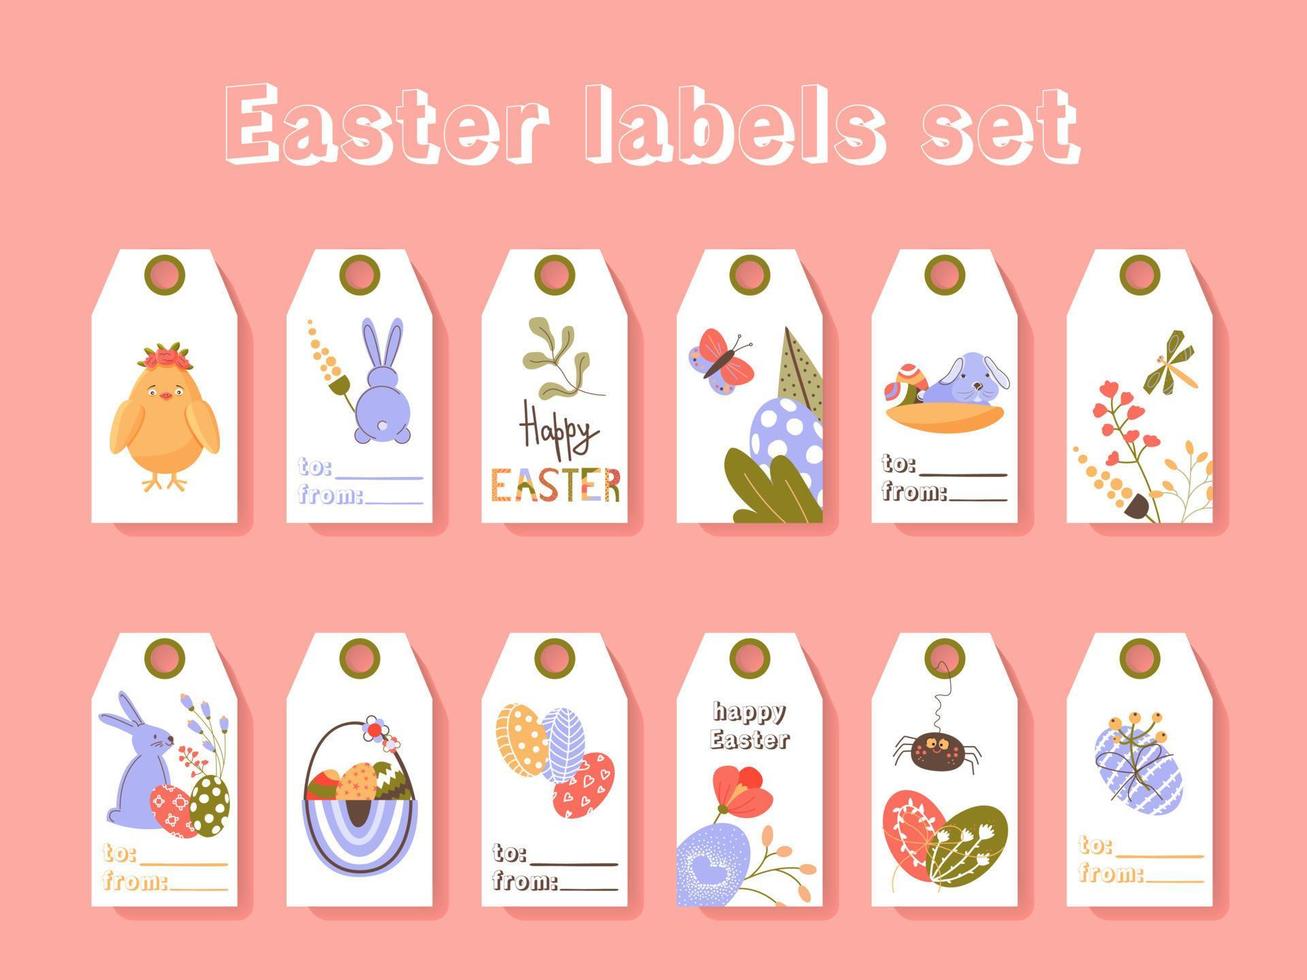 Pasen groet cadeau labels en tags collectie met schattige konijntje, eieren en bloemen. voorjaarsvakantie sjabloon voor seizoensgebonden verpakking, verpakking, stickers. gekleurde platte vectorillustratie vector